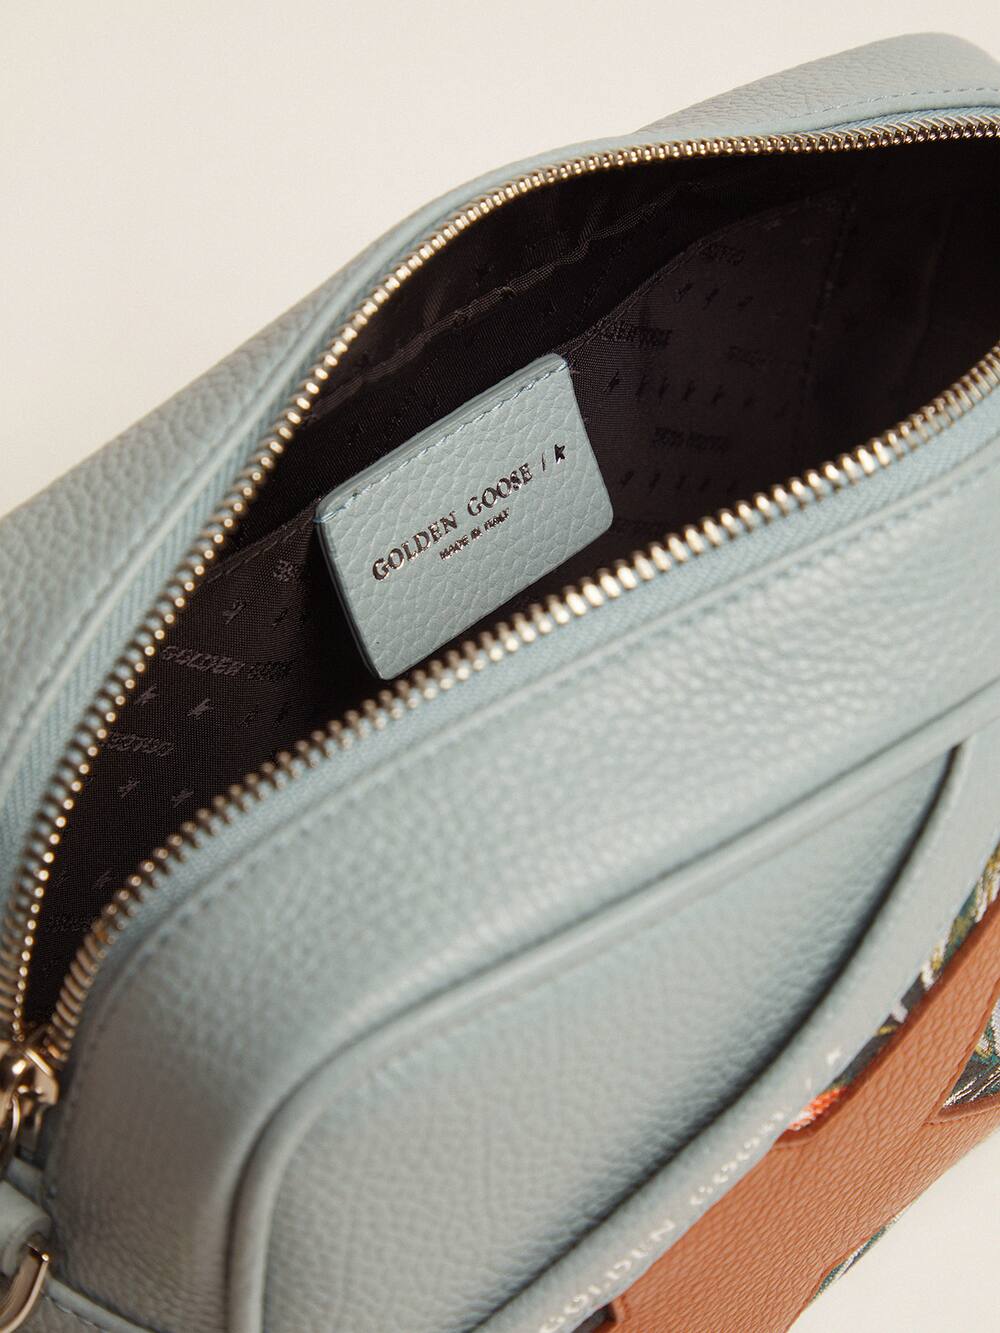 Golden Goose - Tasche Star Bag im Farbton Celadon aus gewalktem Leder mit Jacquard-Print und karamellfarbenem Stern in 